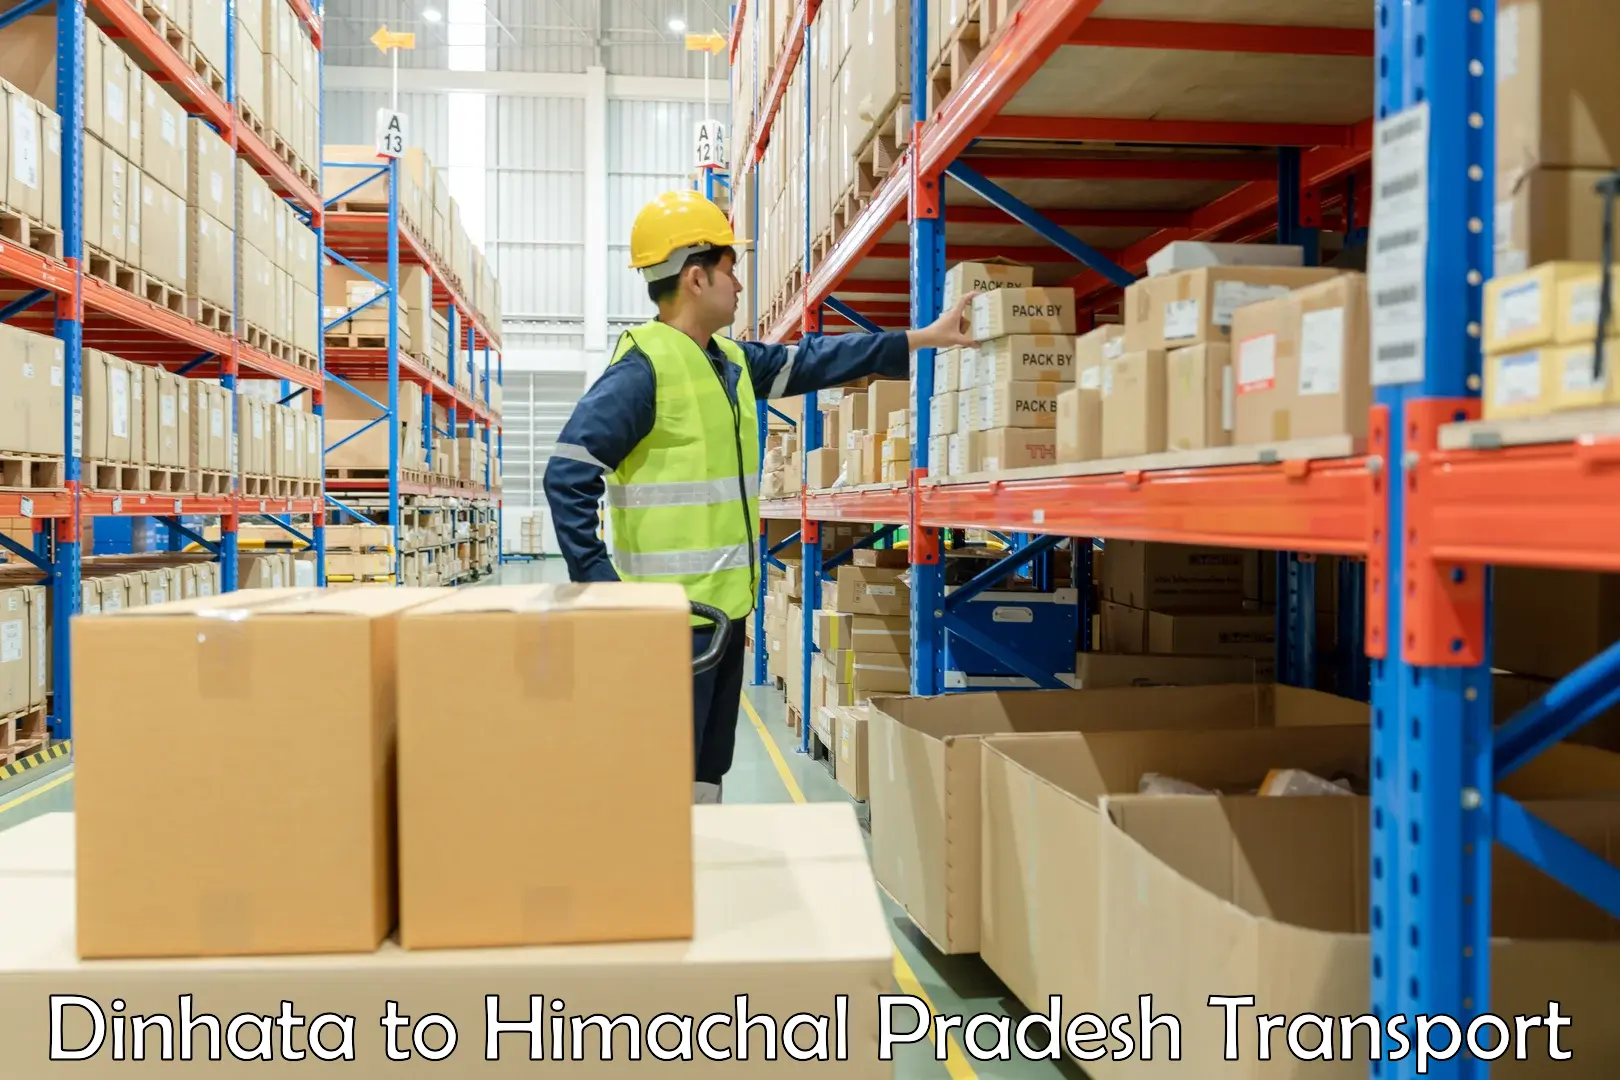 Shipping services Dinhata to Nalagarh